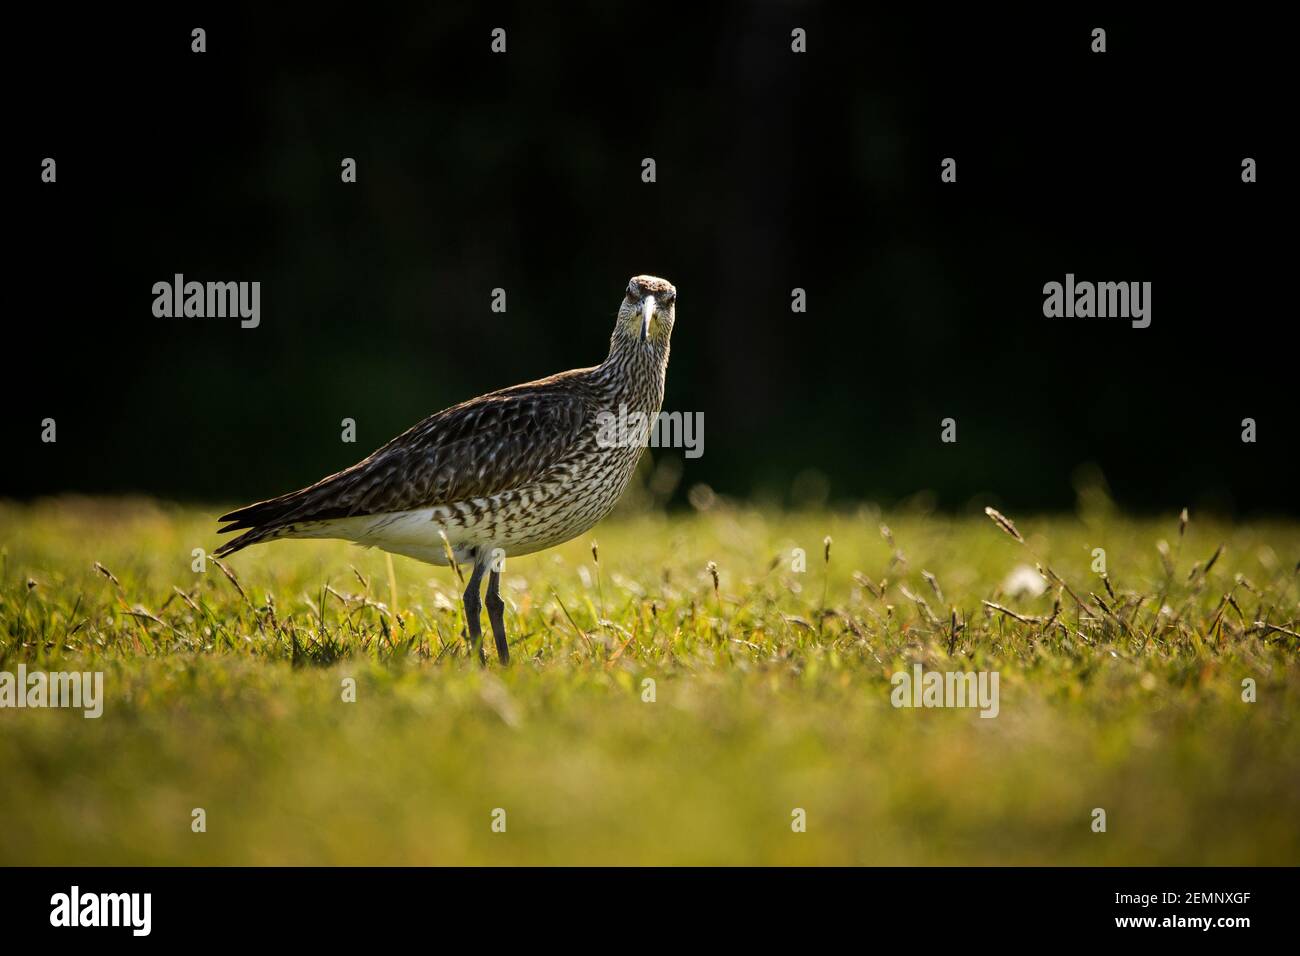 A whimbrel bird feeding in a field Stock Photo